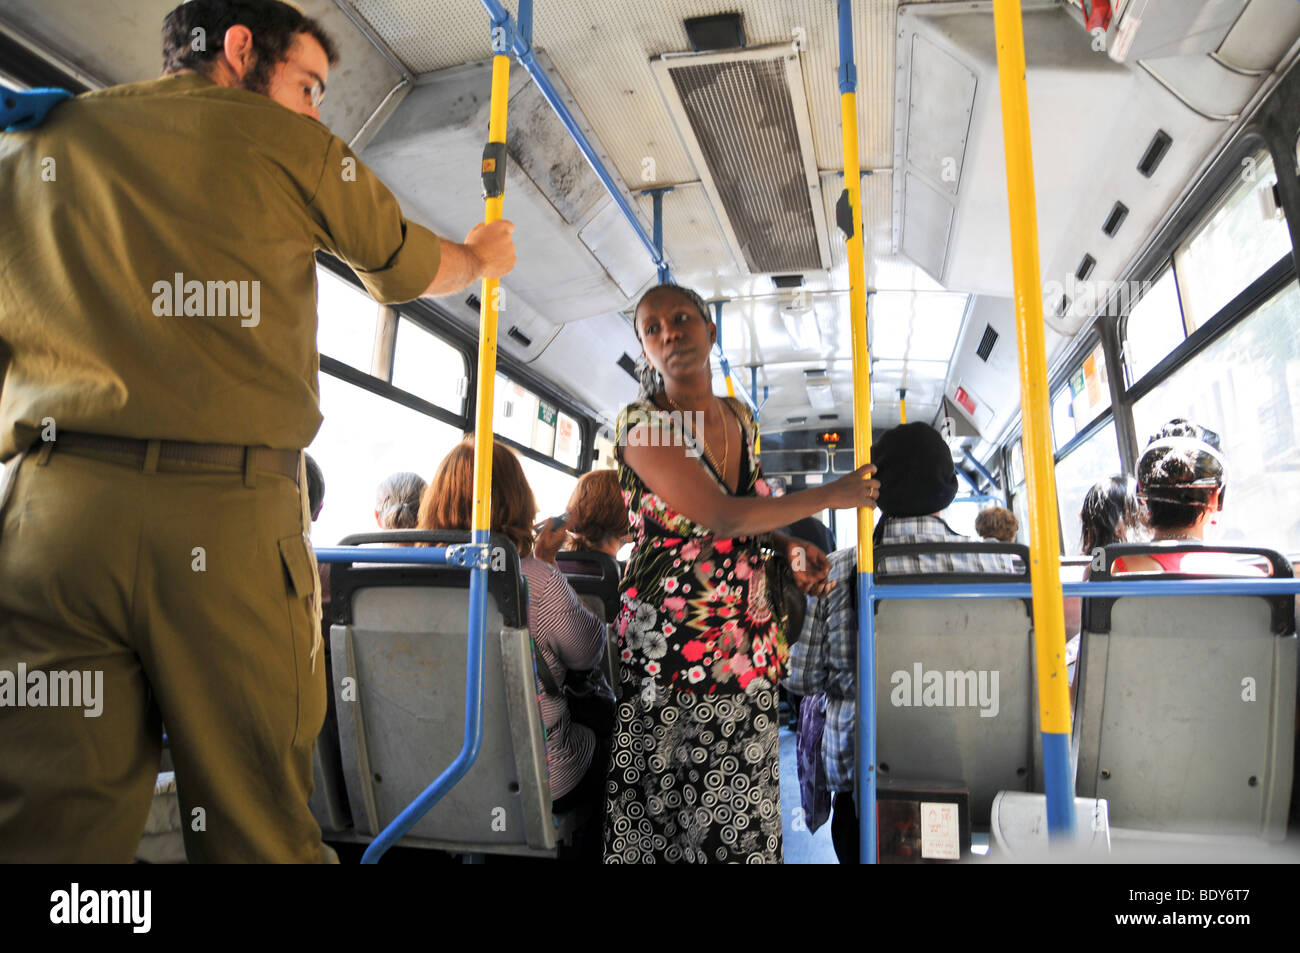 Israël, Jérusalem, de l'intérieur d'un bus de la ville de Egged Banque D'Images